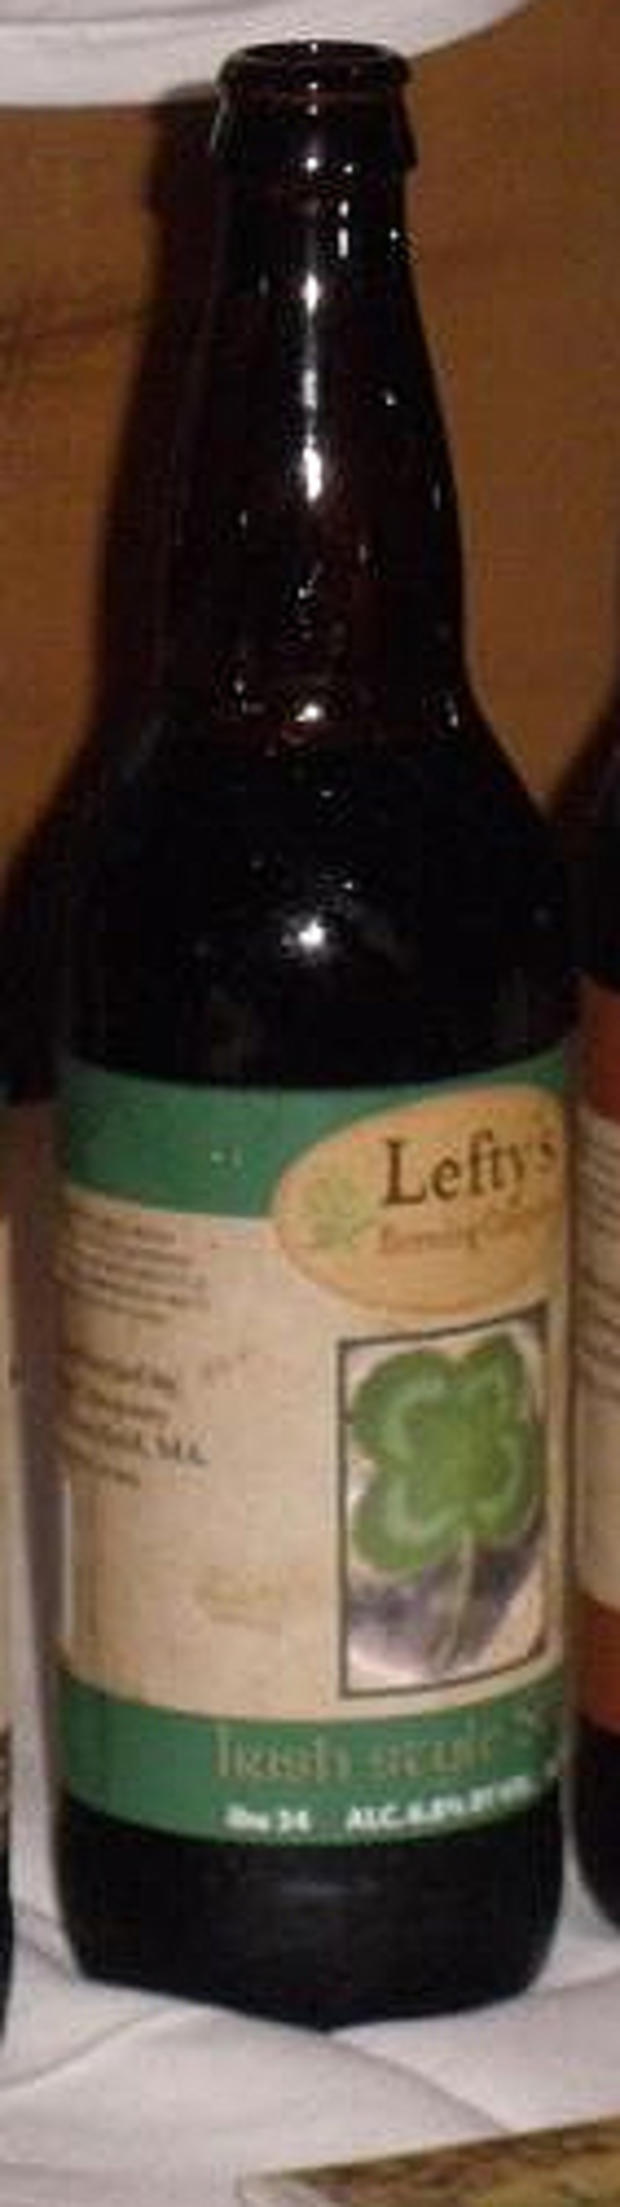 lefty's 